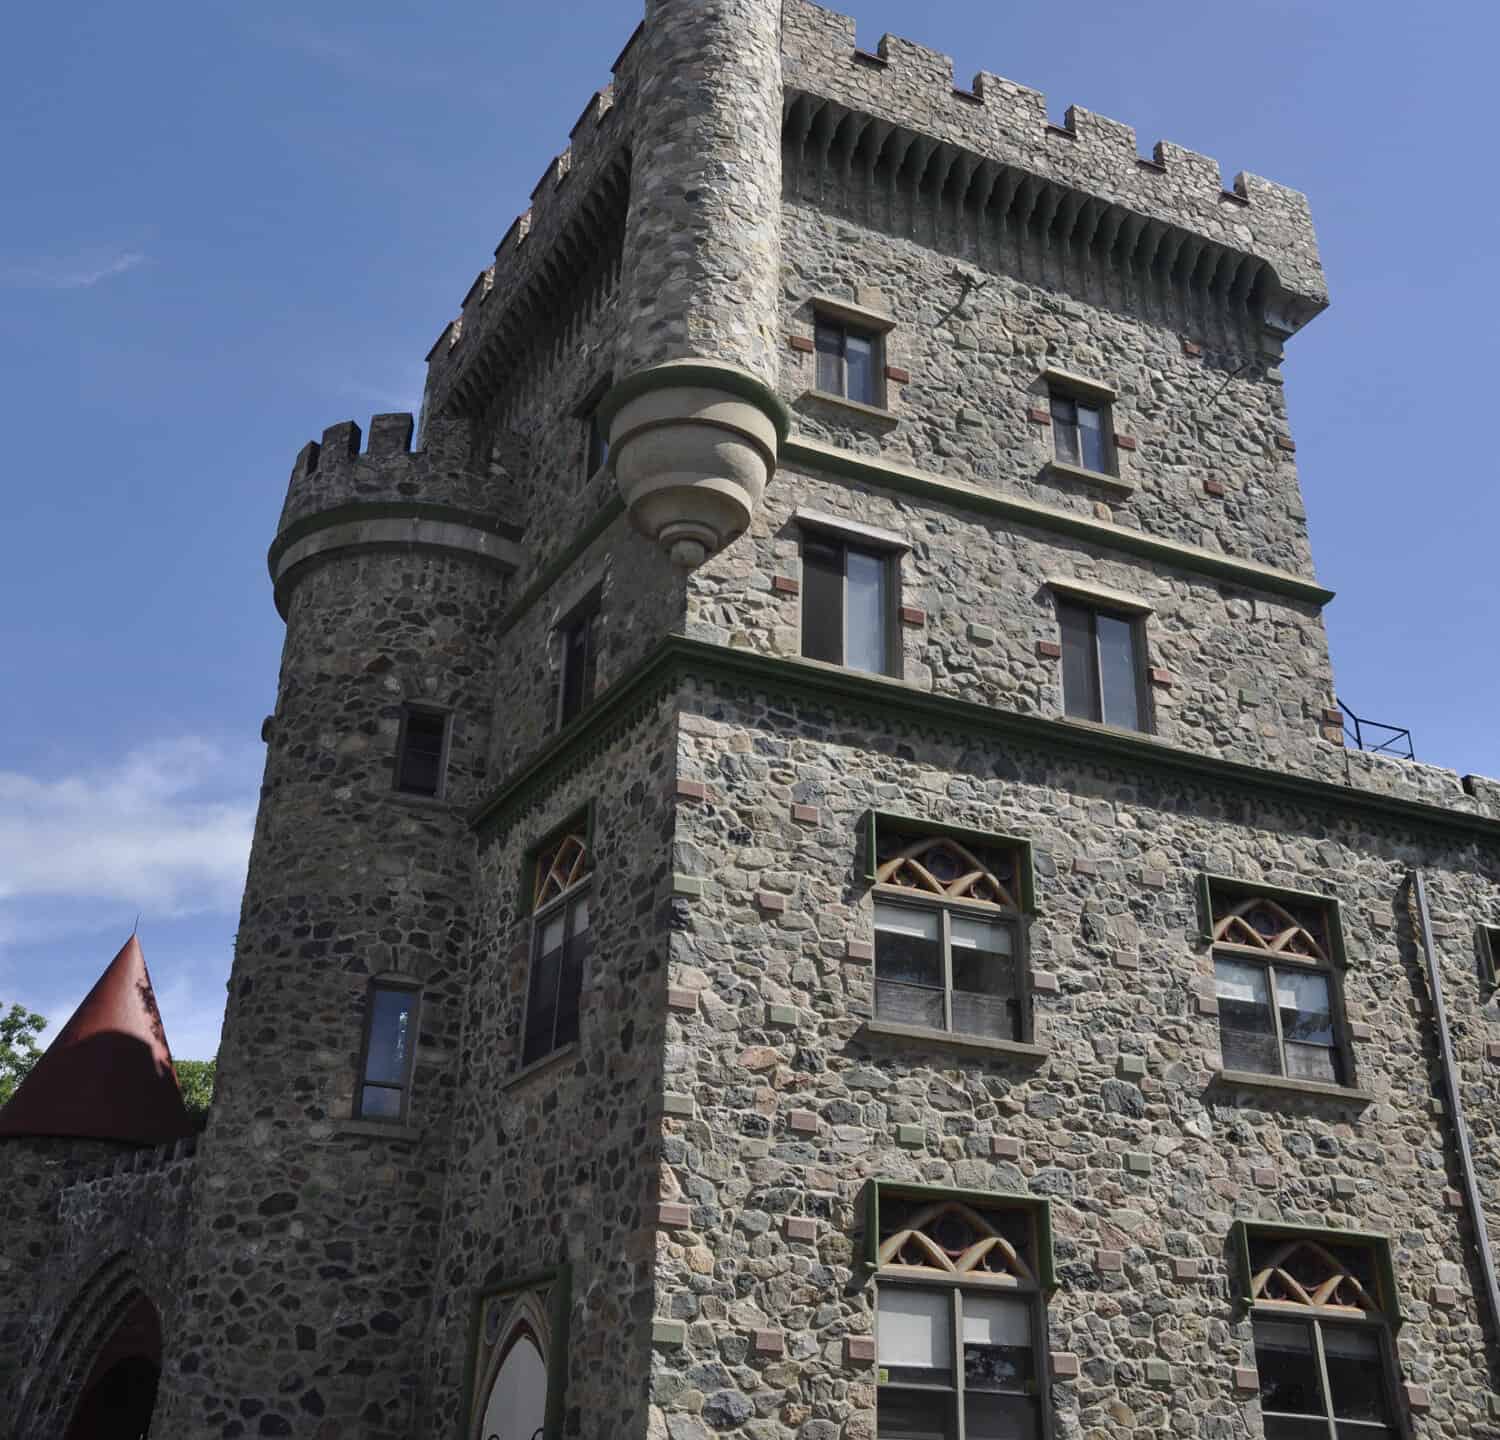 Usen castle in Brandeis University Waltham Massachusetts